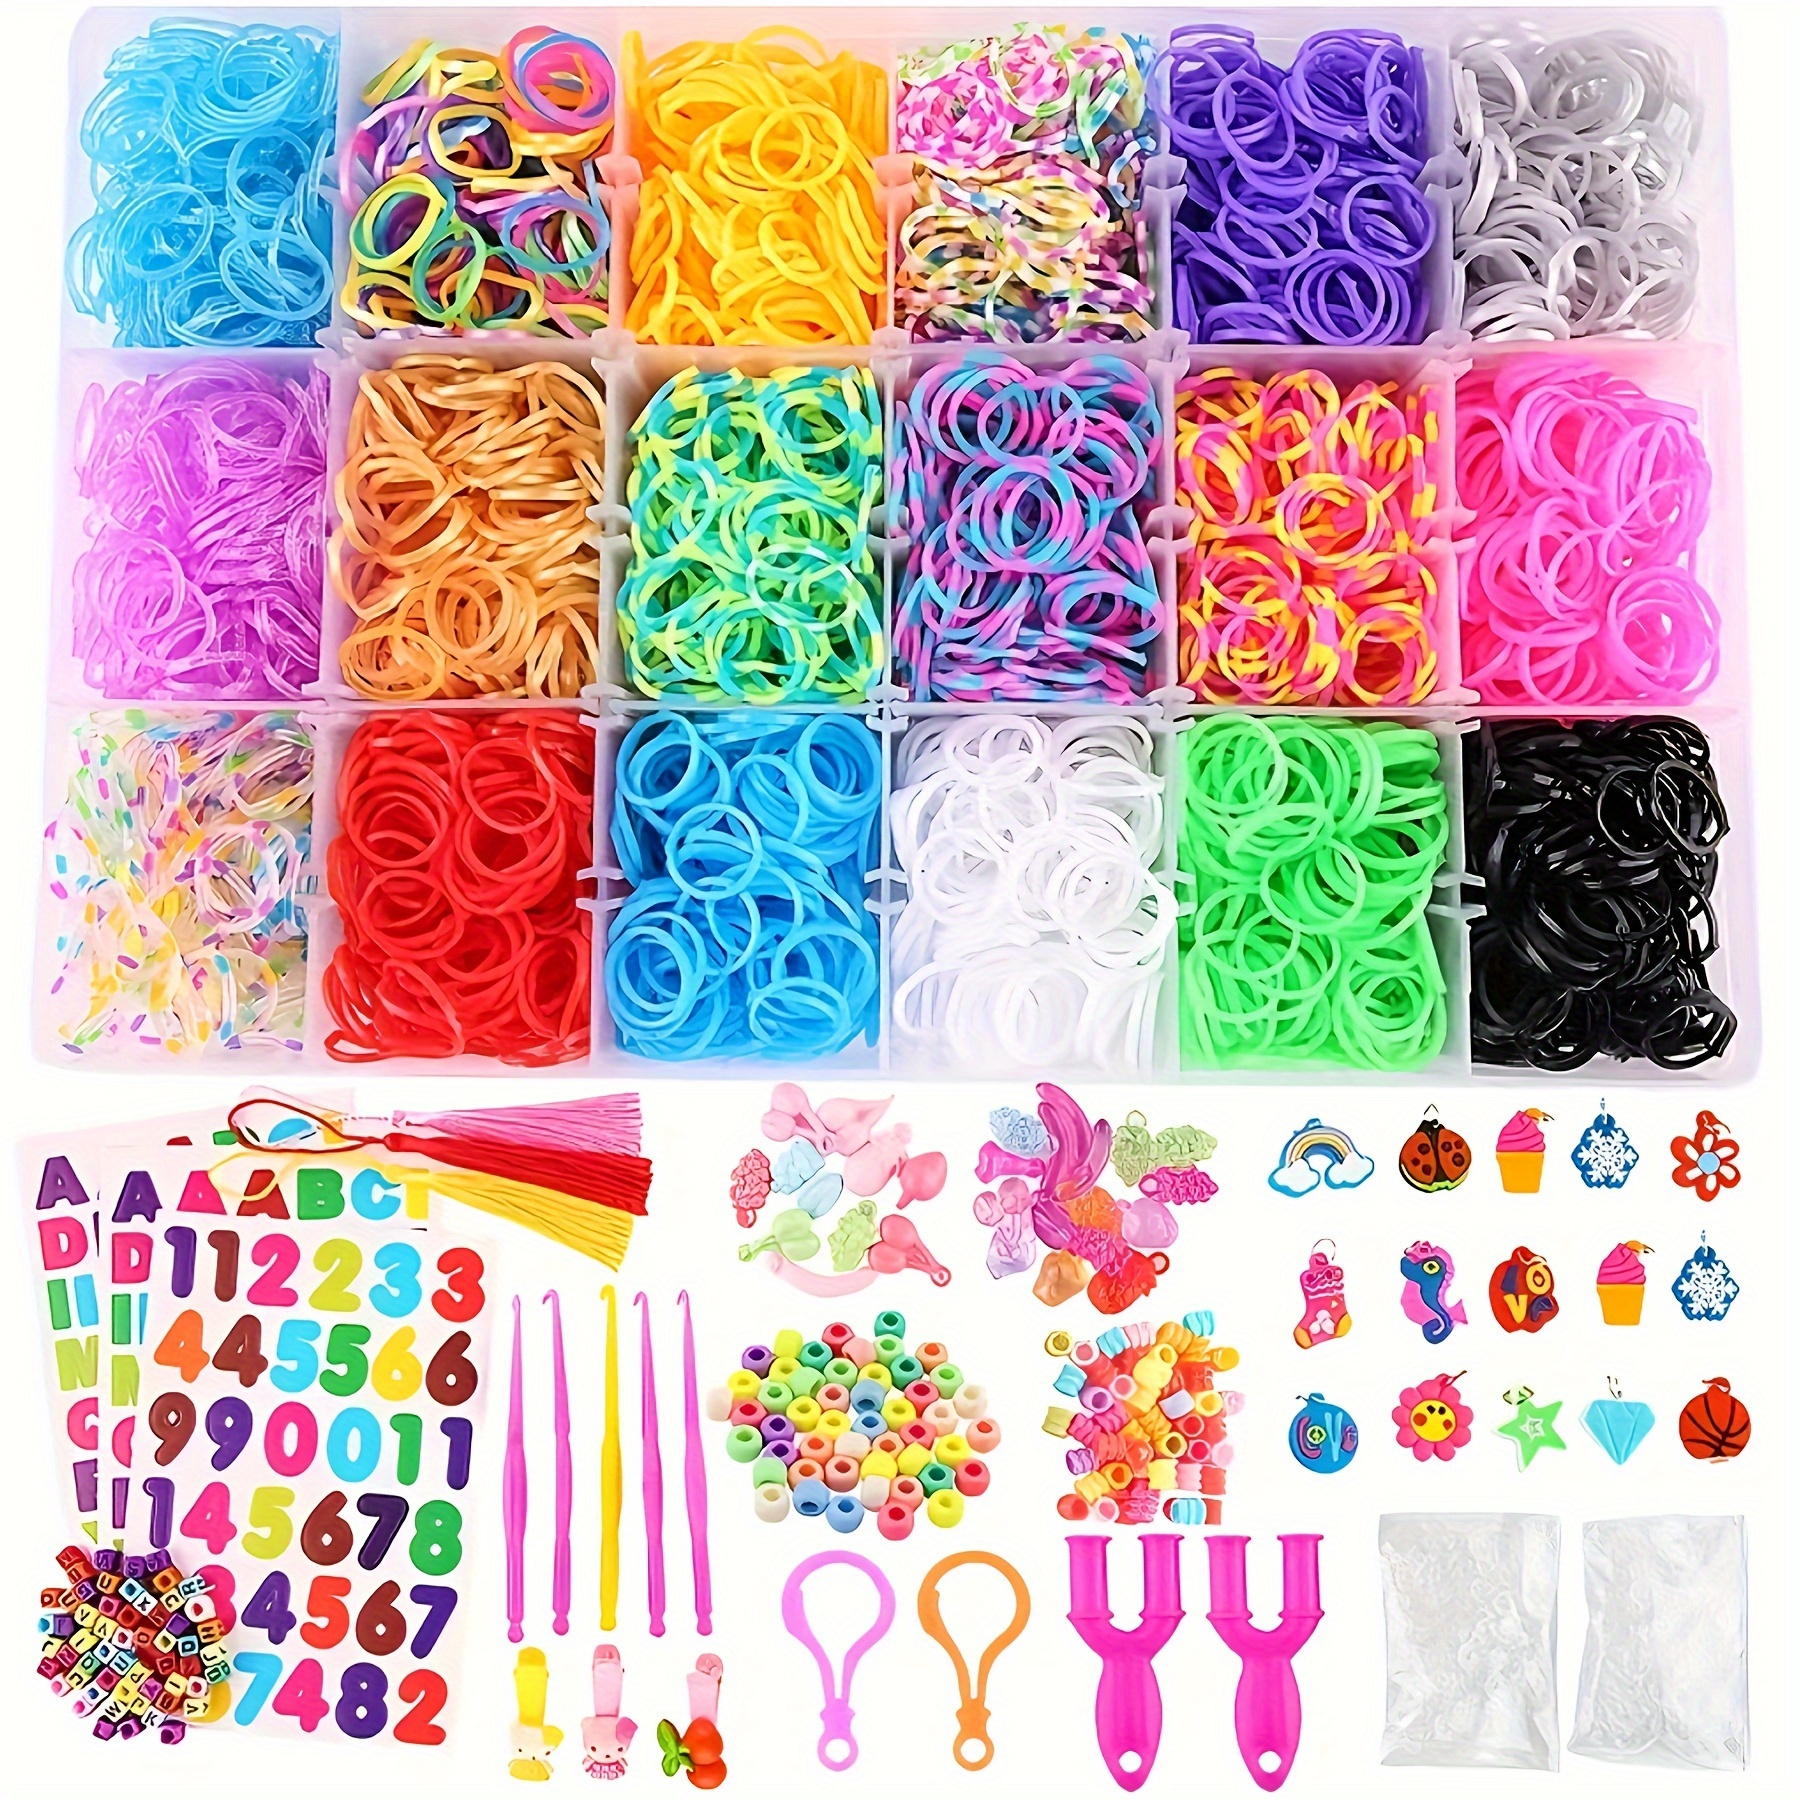 Colorful Loom Bands Set Candy Color Bracelet Making Kit DIY Rubber